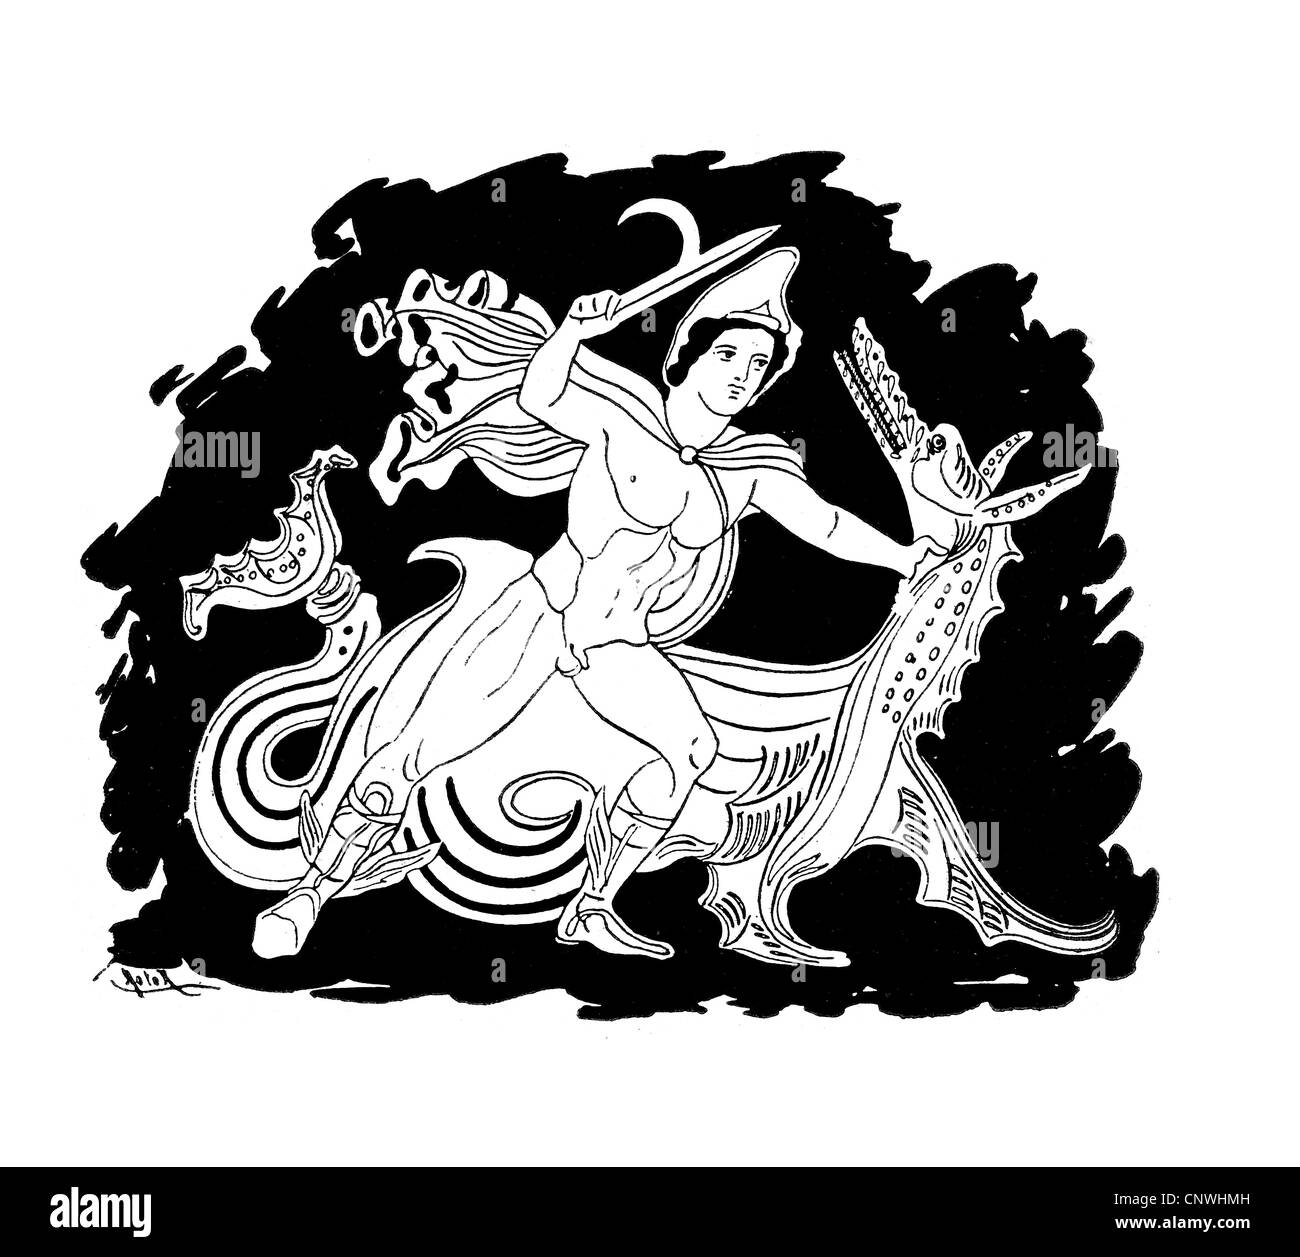 Un ancien héros grec terrassant un dragon ou un ver Banque D'Images